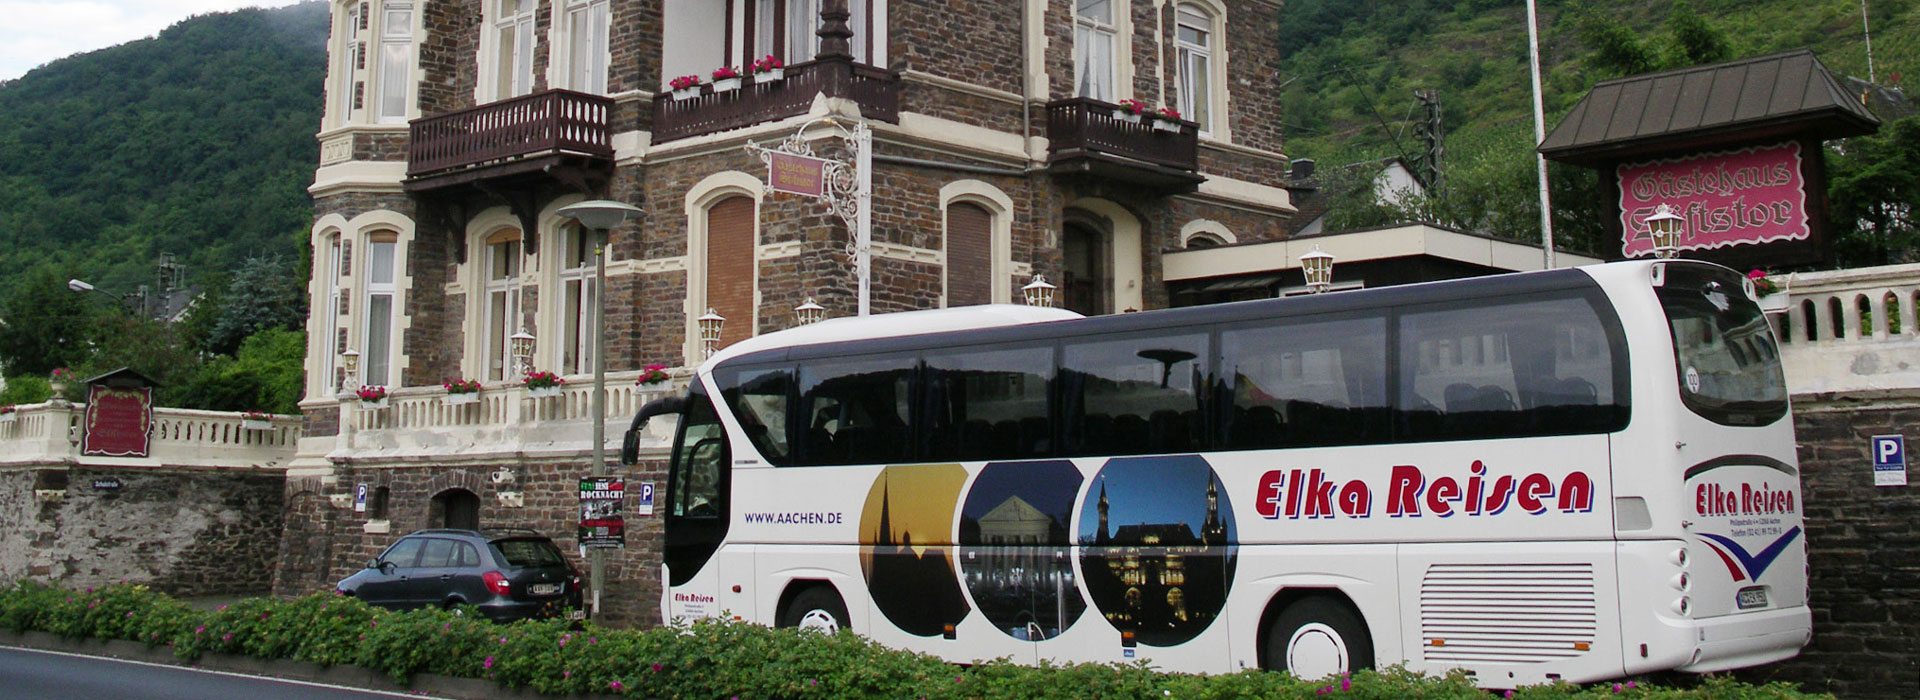 Reisebus von Elka Reisen vor dem Gasthaus Stiftstor